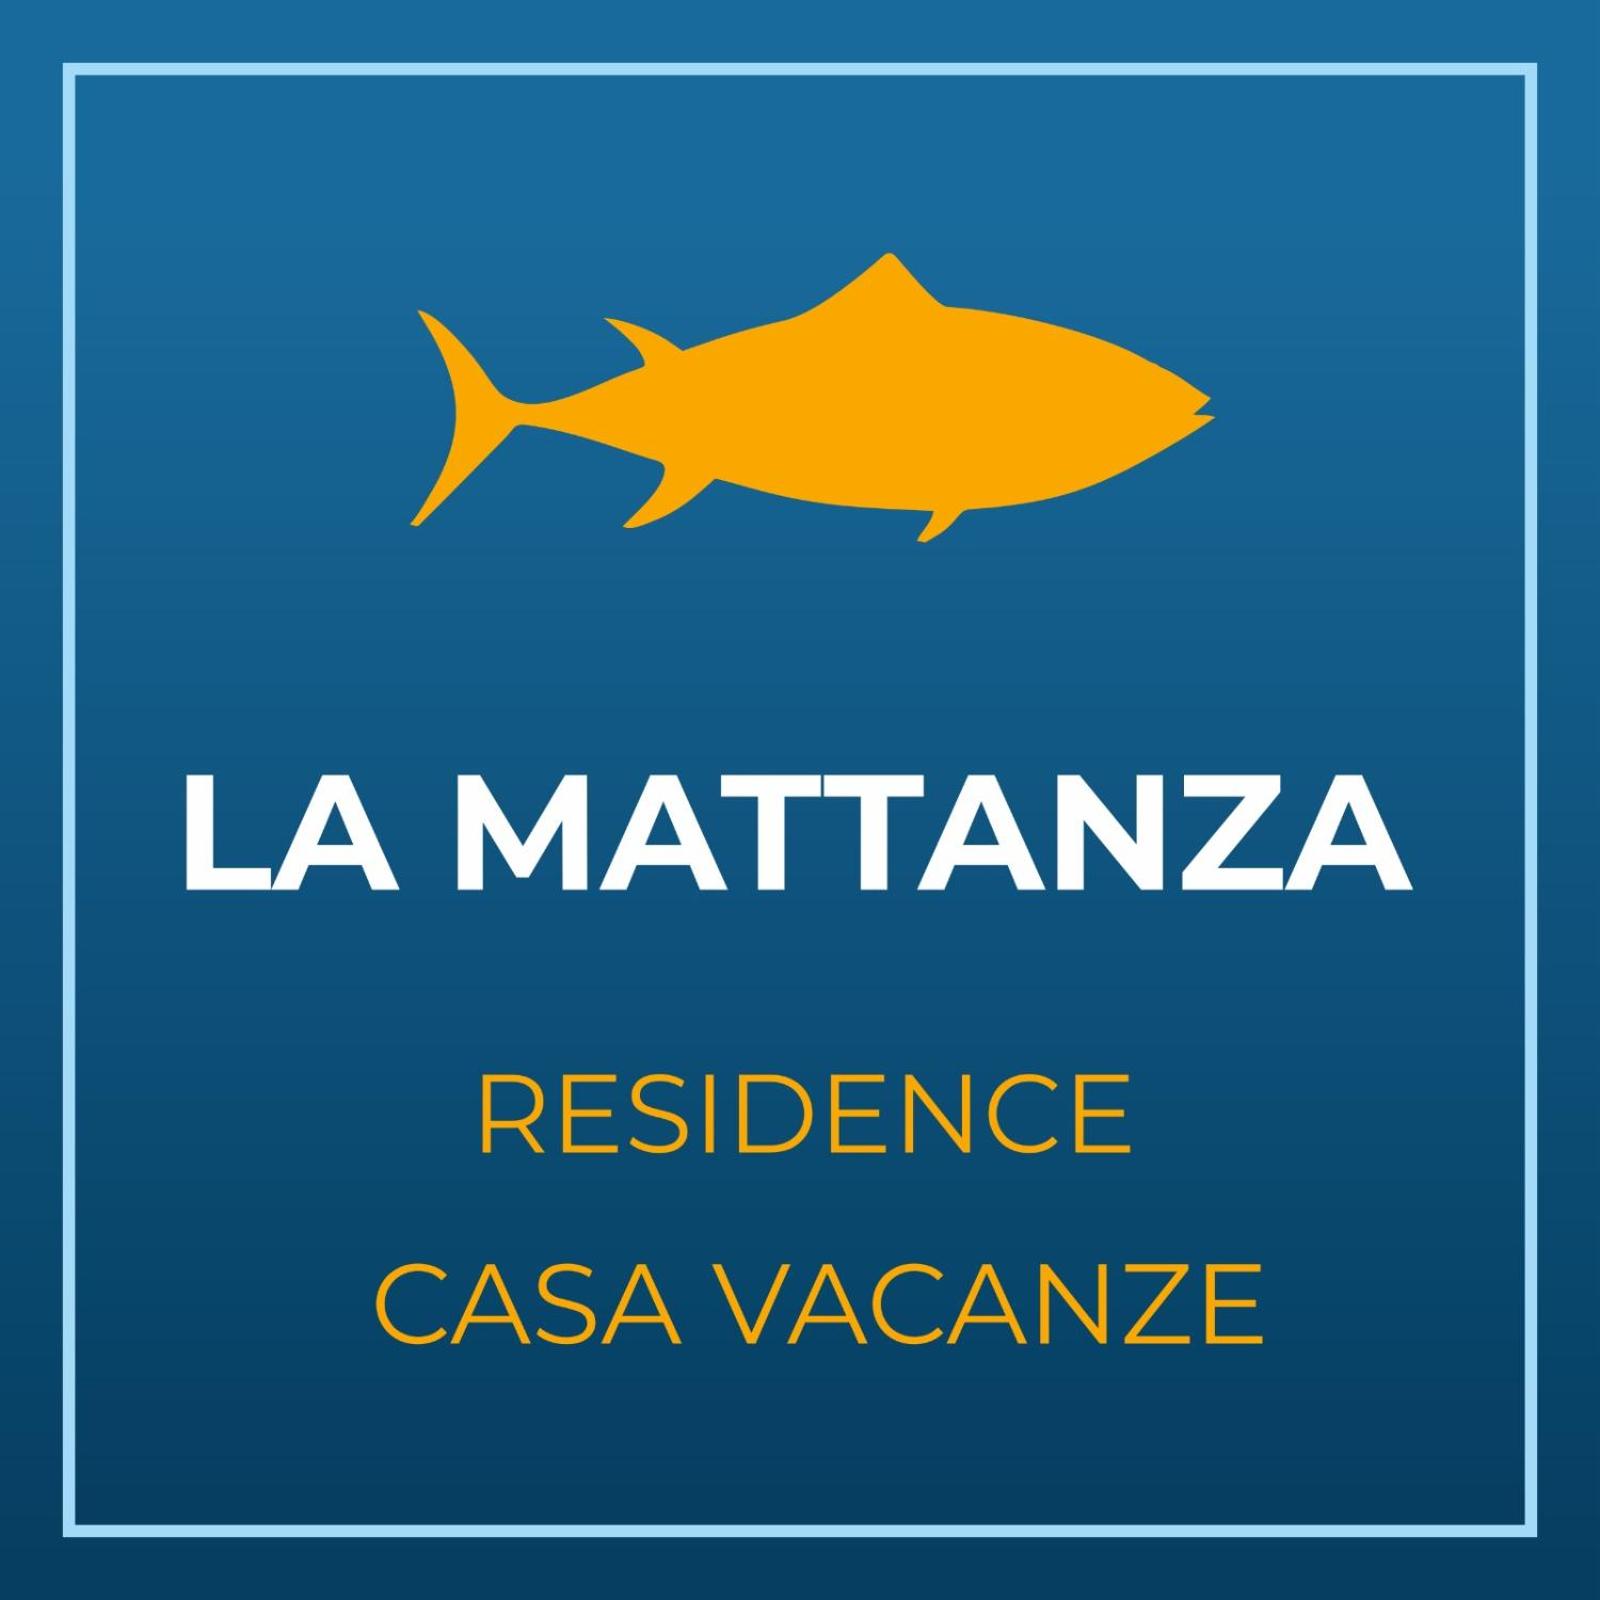 Casa Vacanze La Mattanza